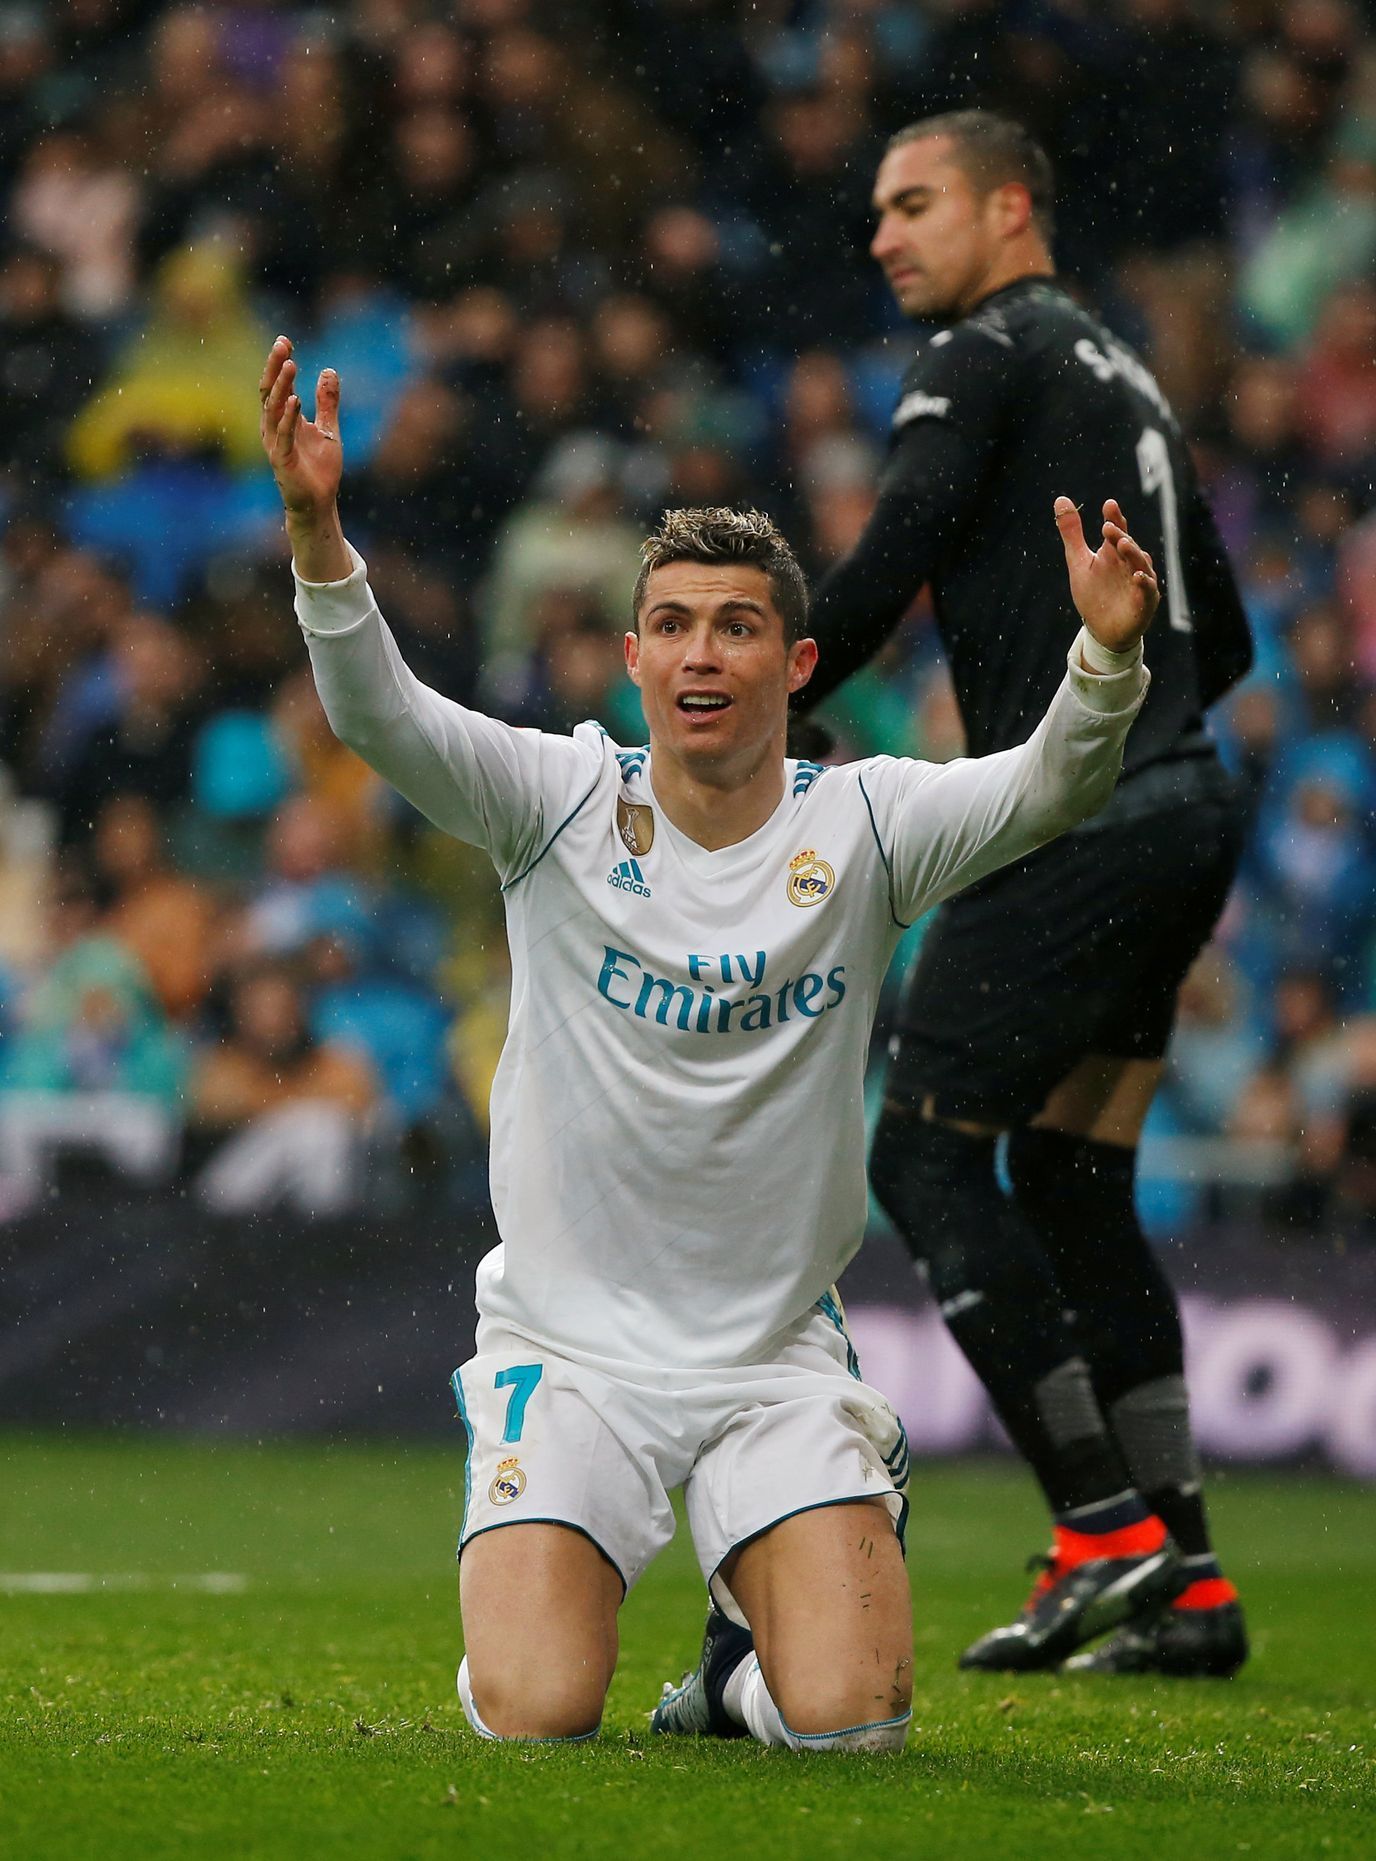 Cristiano Ronaldo v utkání s Villarrealem